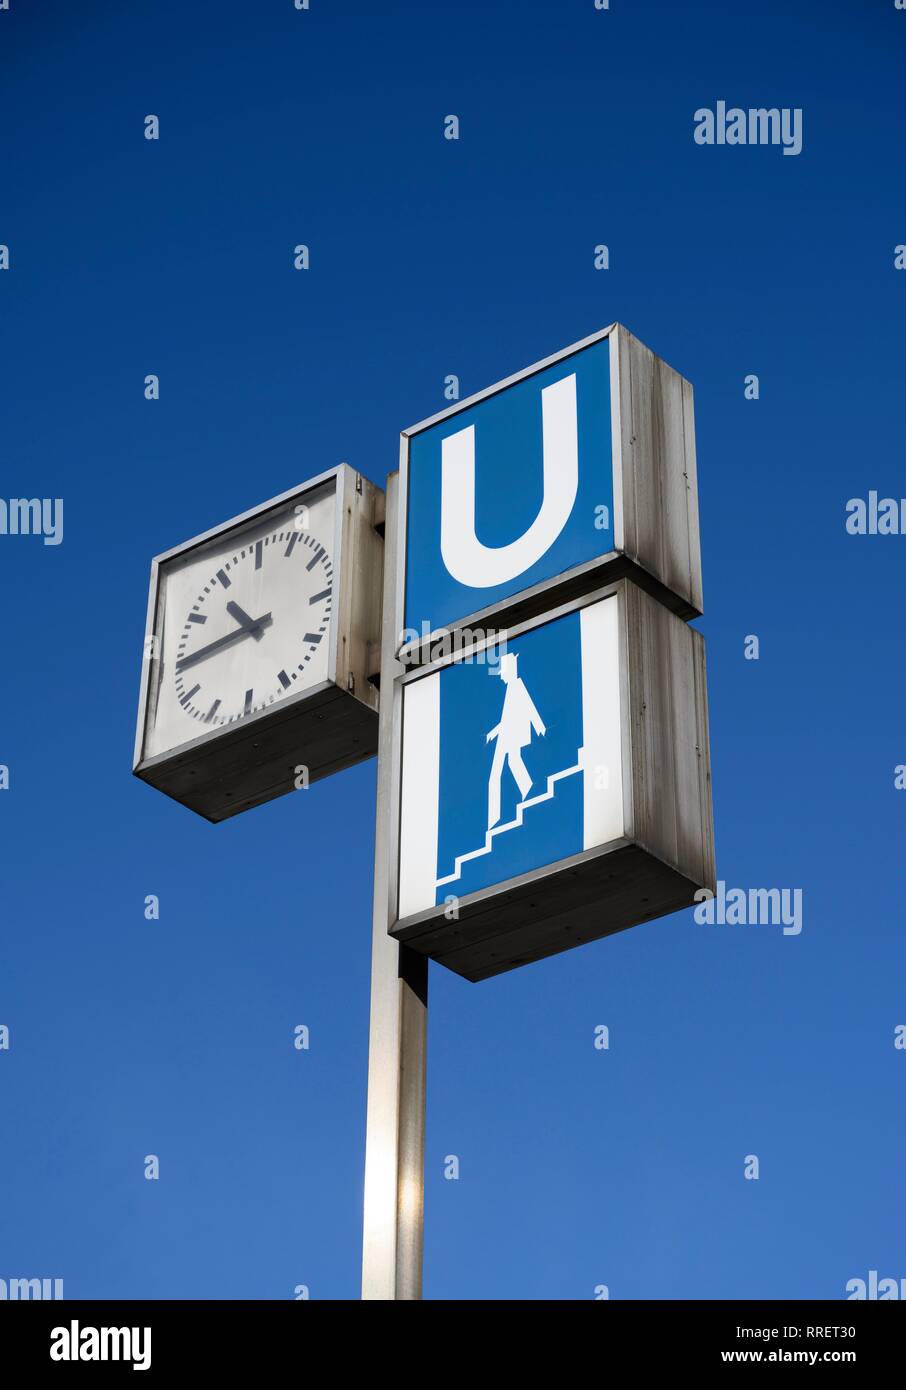 Subway sign and clock at subway station, Munich, Bavaria, Germany Stock Photo